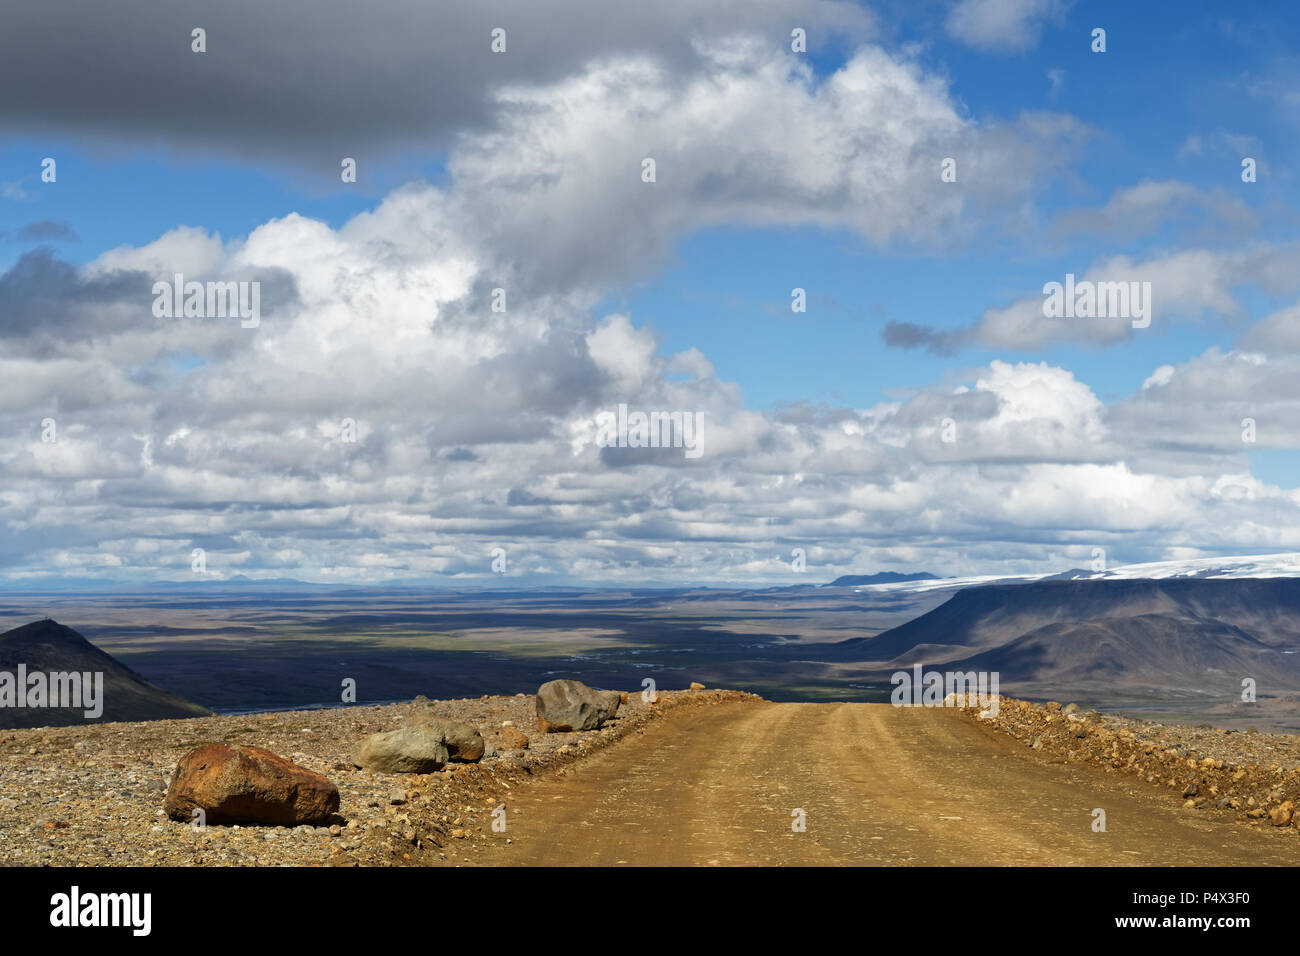 Une route de gravier mène sur une petite colline, derrière c'est un vaste paysage de plaine, des chaînes de montagnes et glaciers à voir, au-dessus de ciel bleu avec blanc et gr Banque D'Images